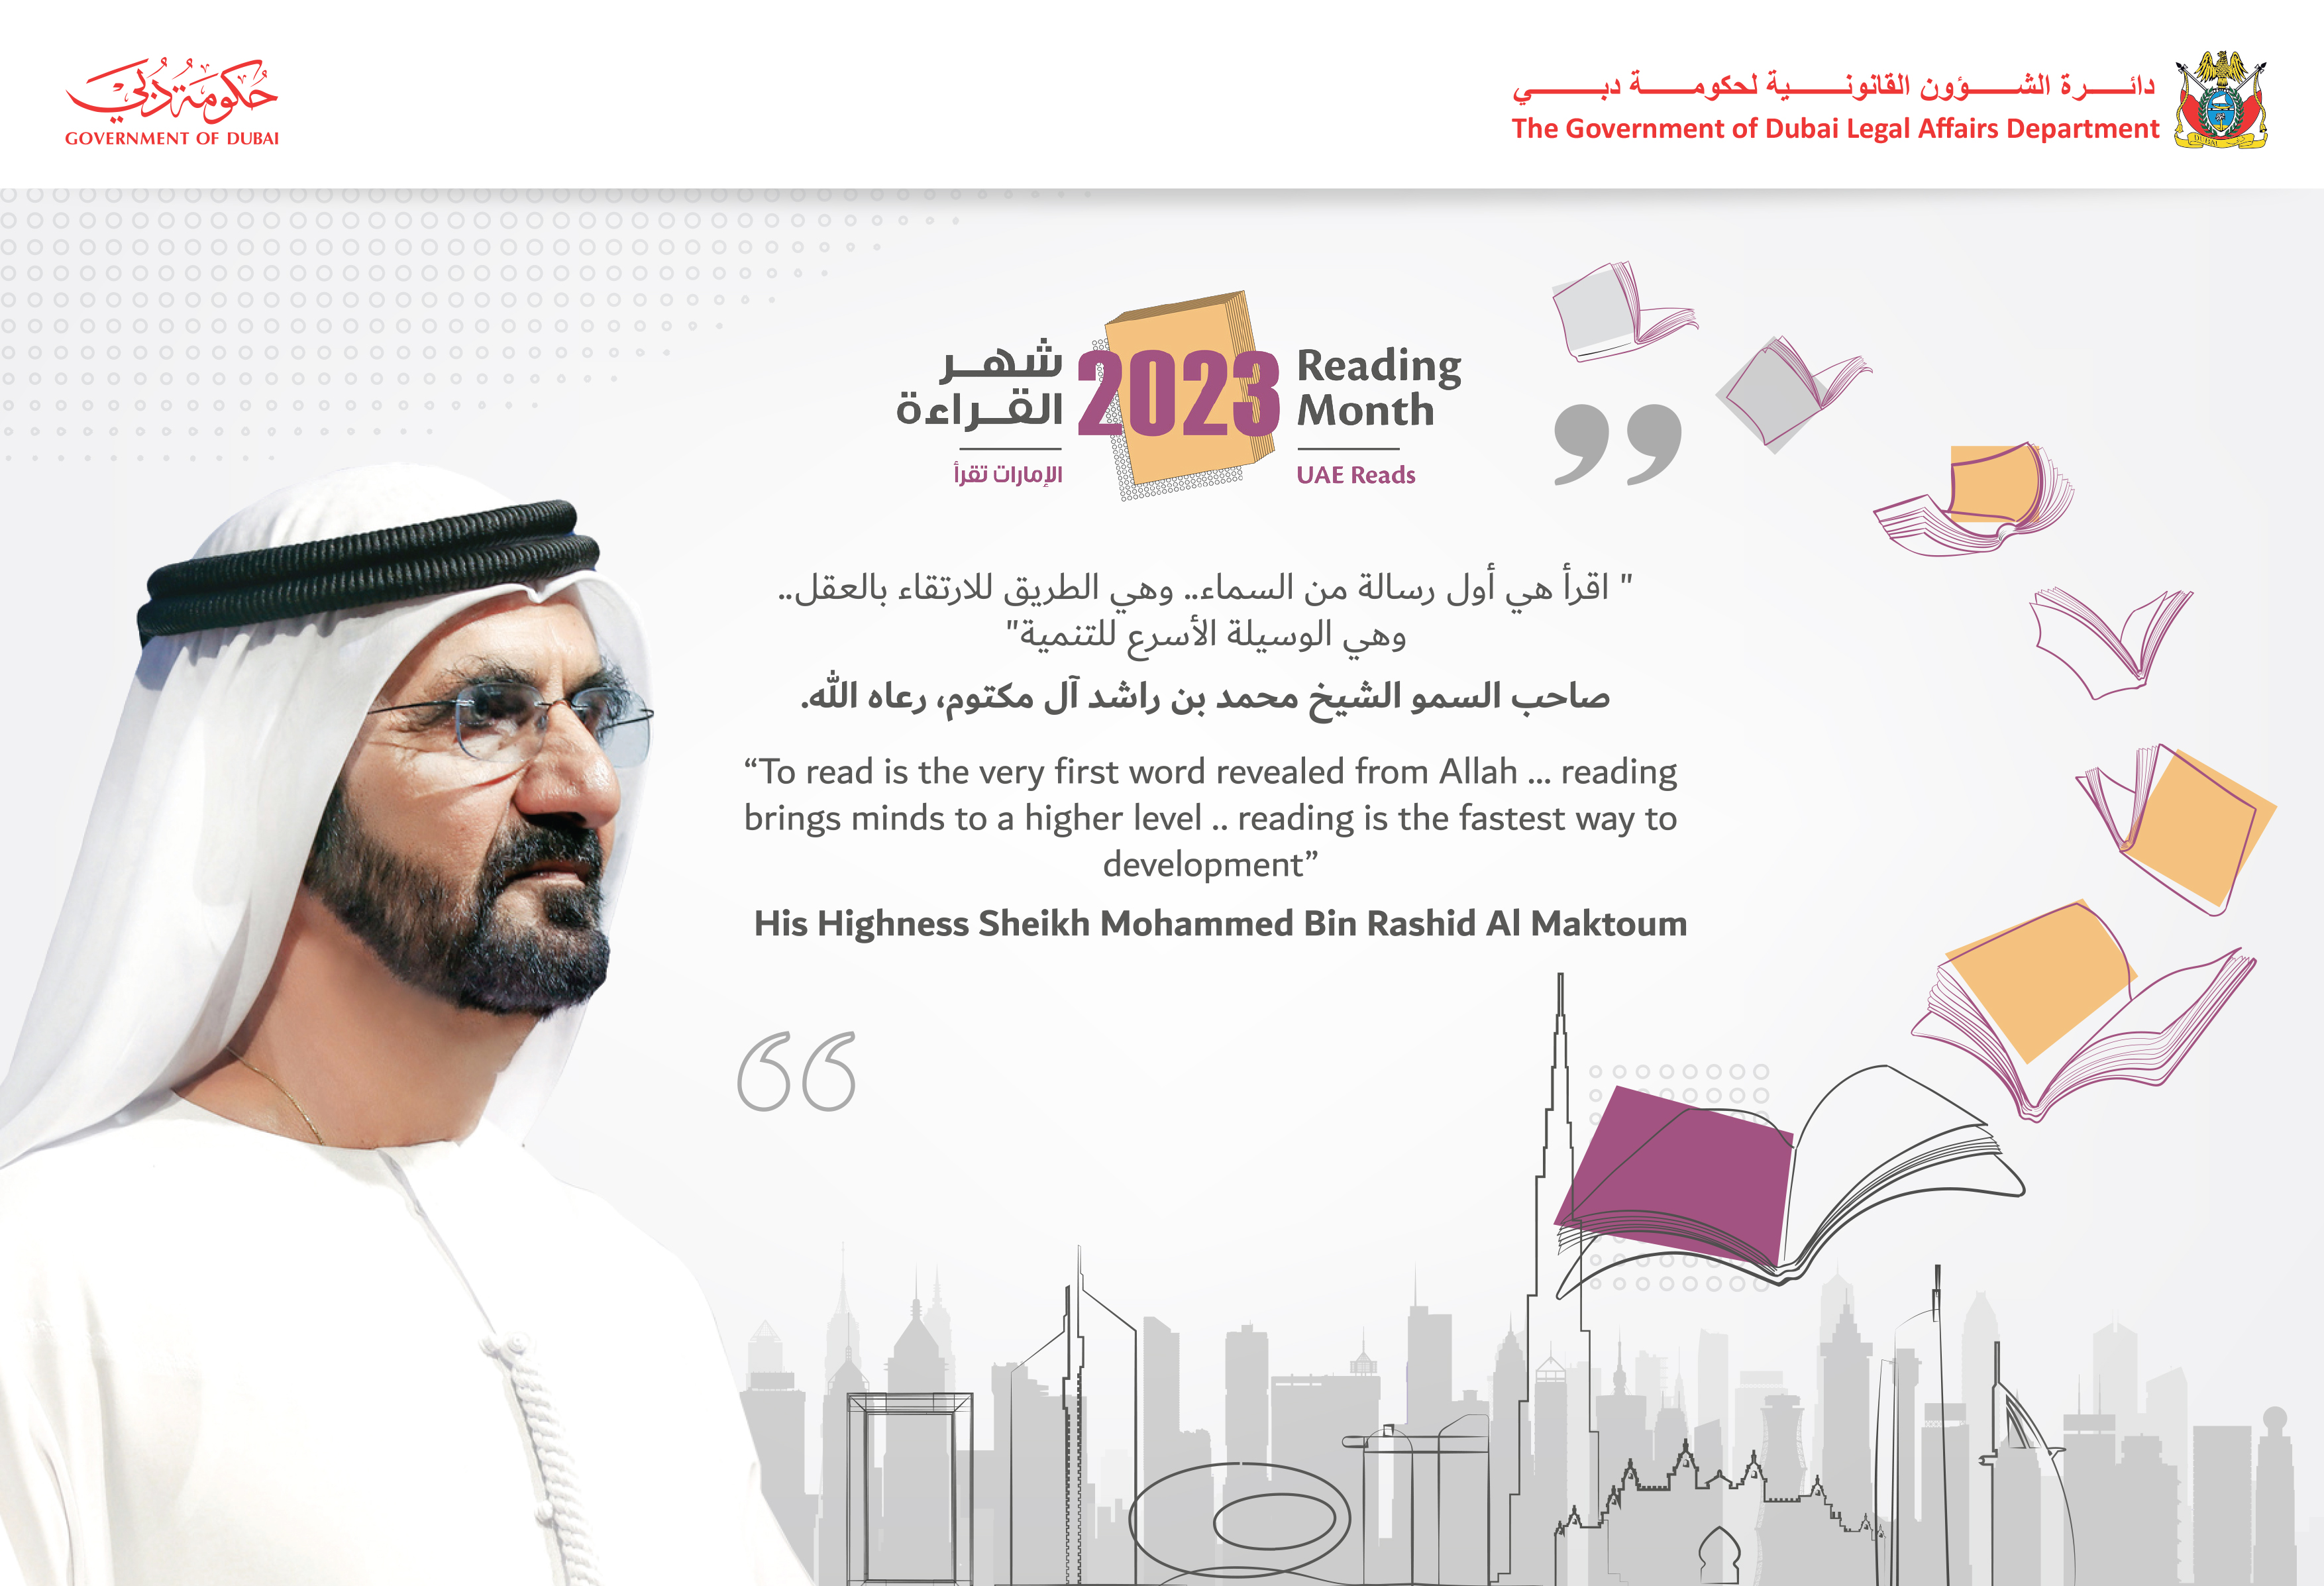 دائرة الشؤون القانونية لحكومة دبي تختتم فعالياتها في شهر القراءة 2023